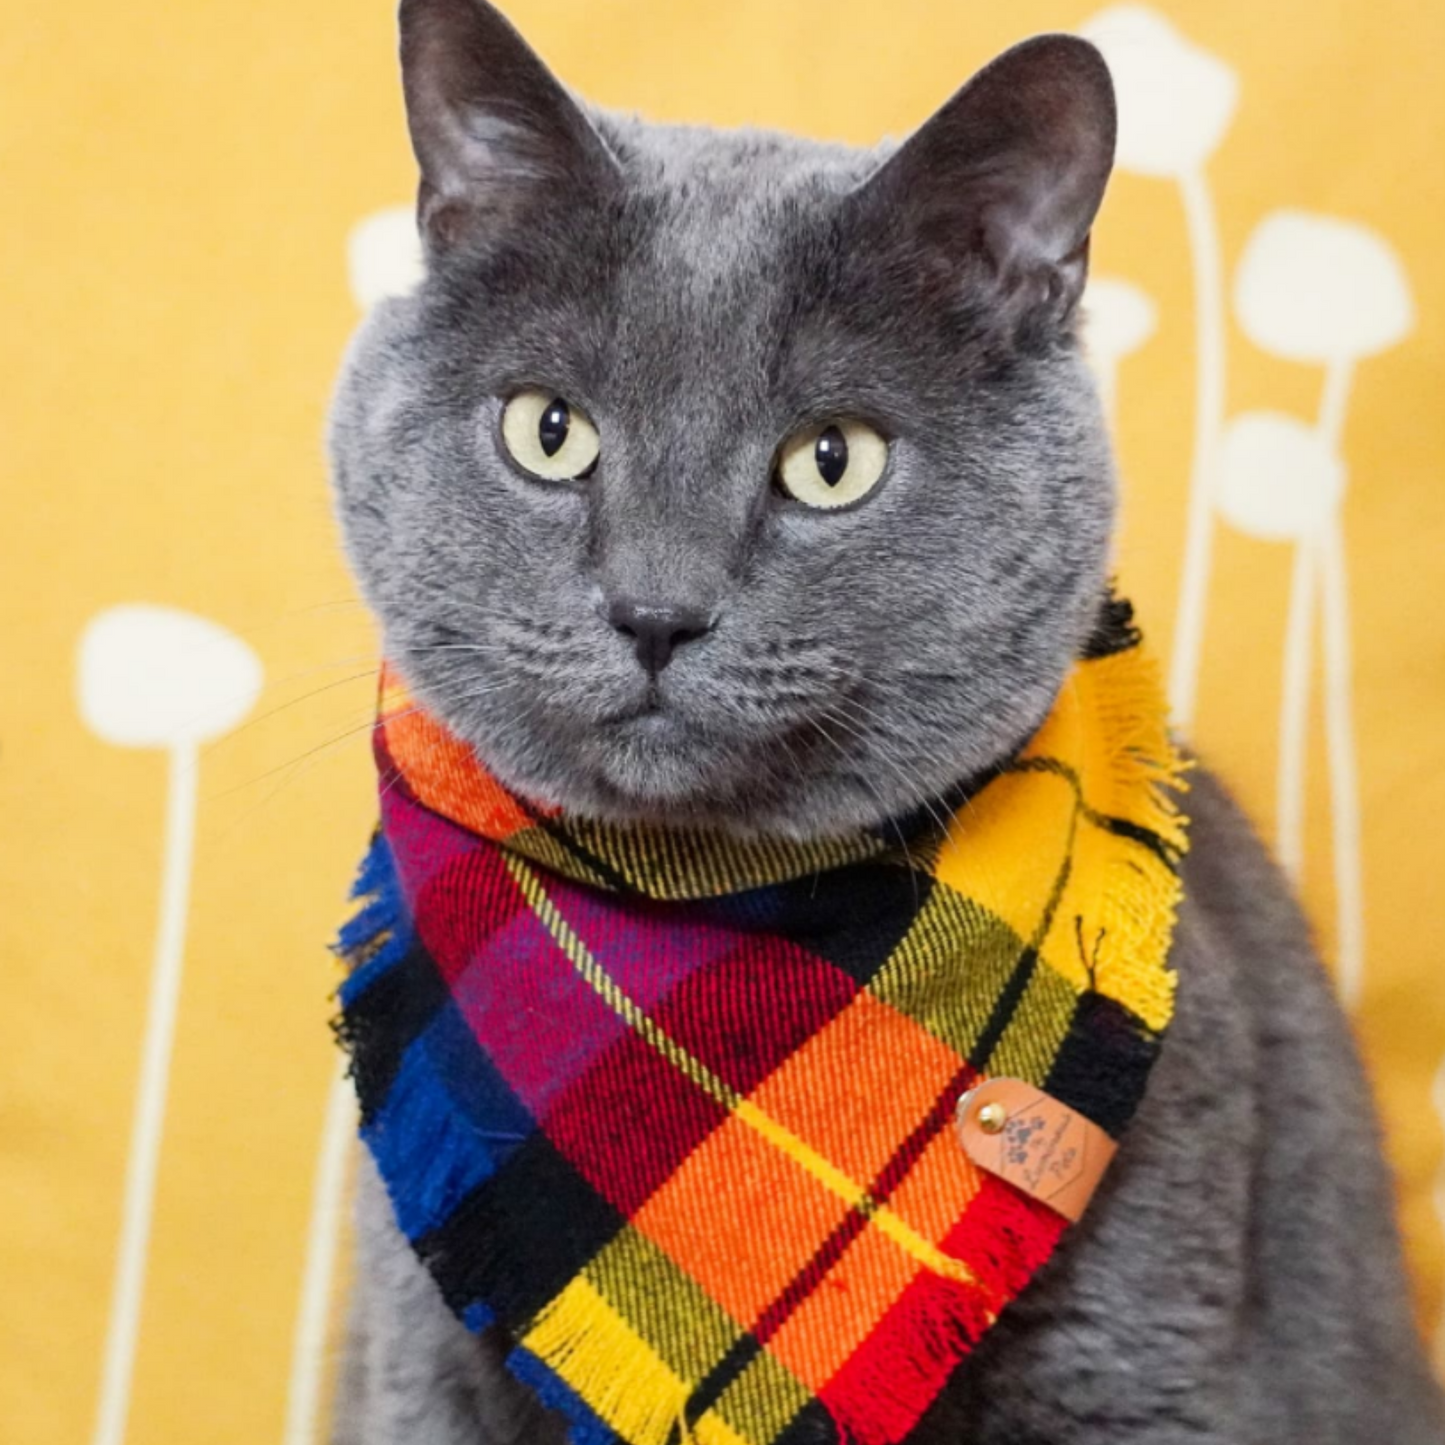 Vibrant plaid bandana on gray blue cat | The Luminous Pets